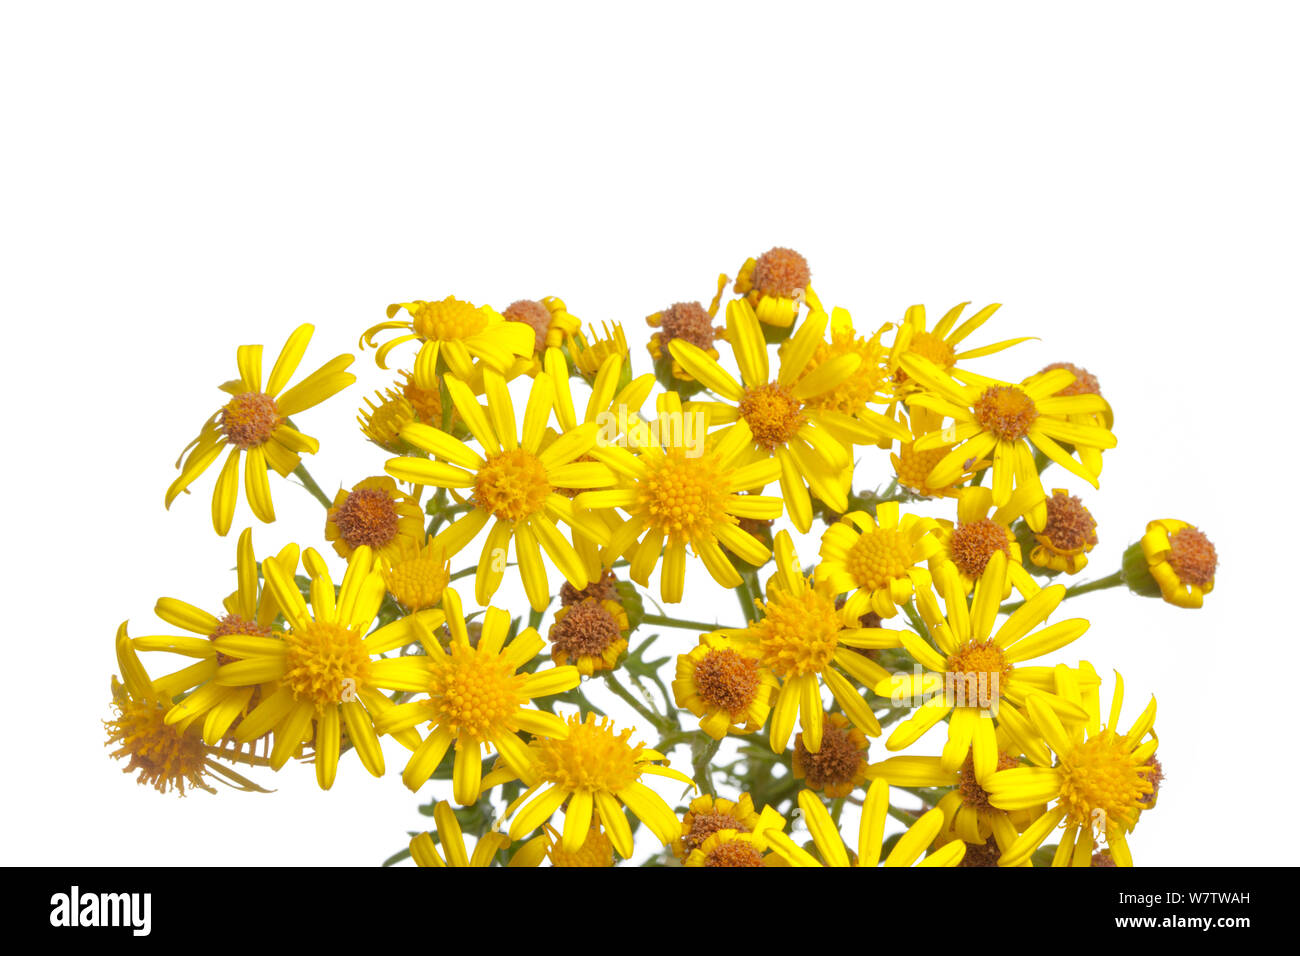 Common Ragwort (Maculata vulgaris) Blumen vor weißem Hintergrund, Derbyshire, England, UK, August. Invasive Arten, giftig für Tiere. Stockfoto